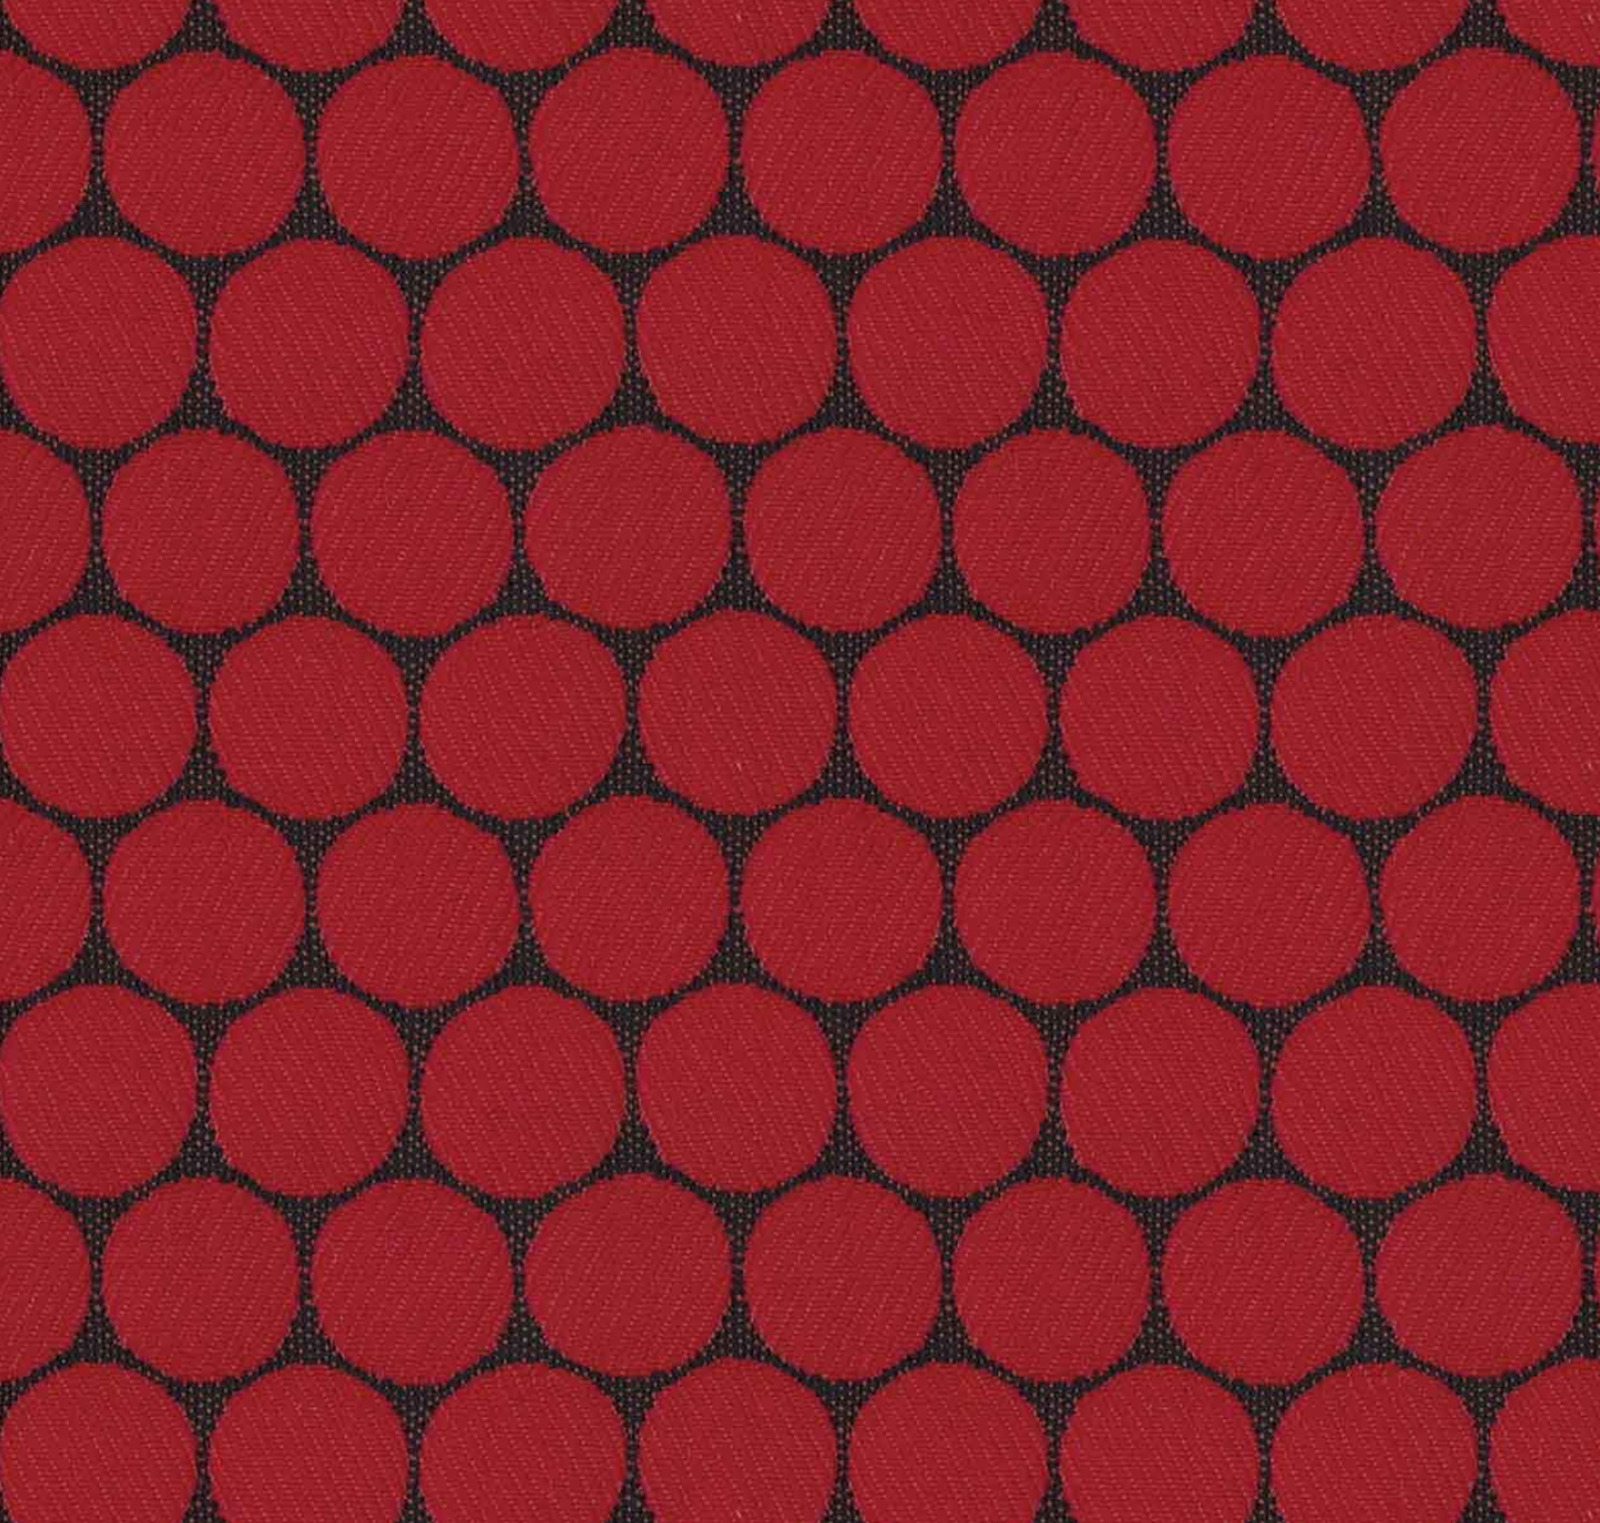 2 yds Designtex Loop to Loop Red & Black Dot Upholstery Fabric 3467-301 EO